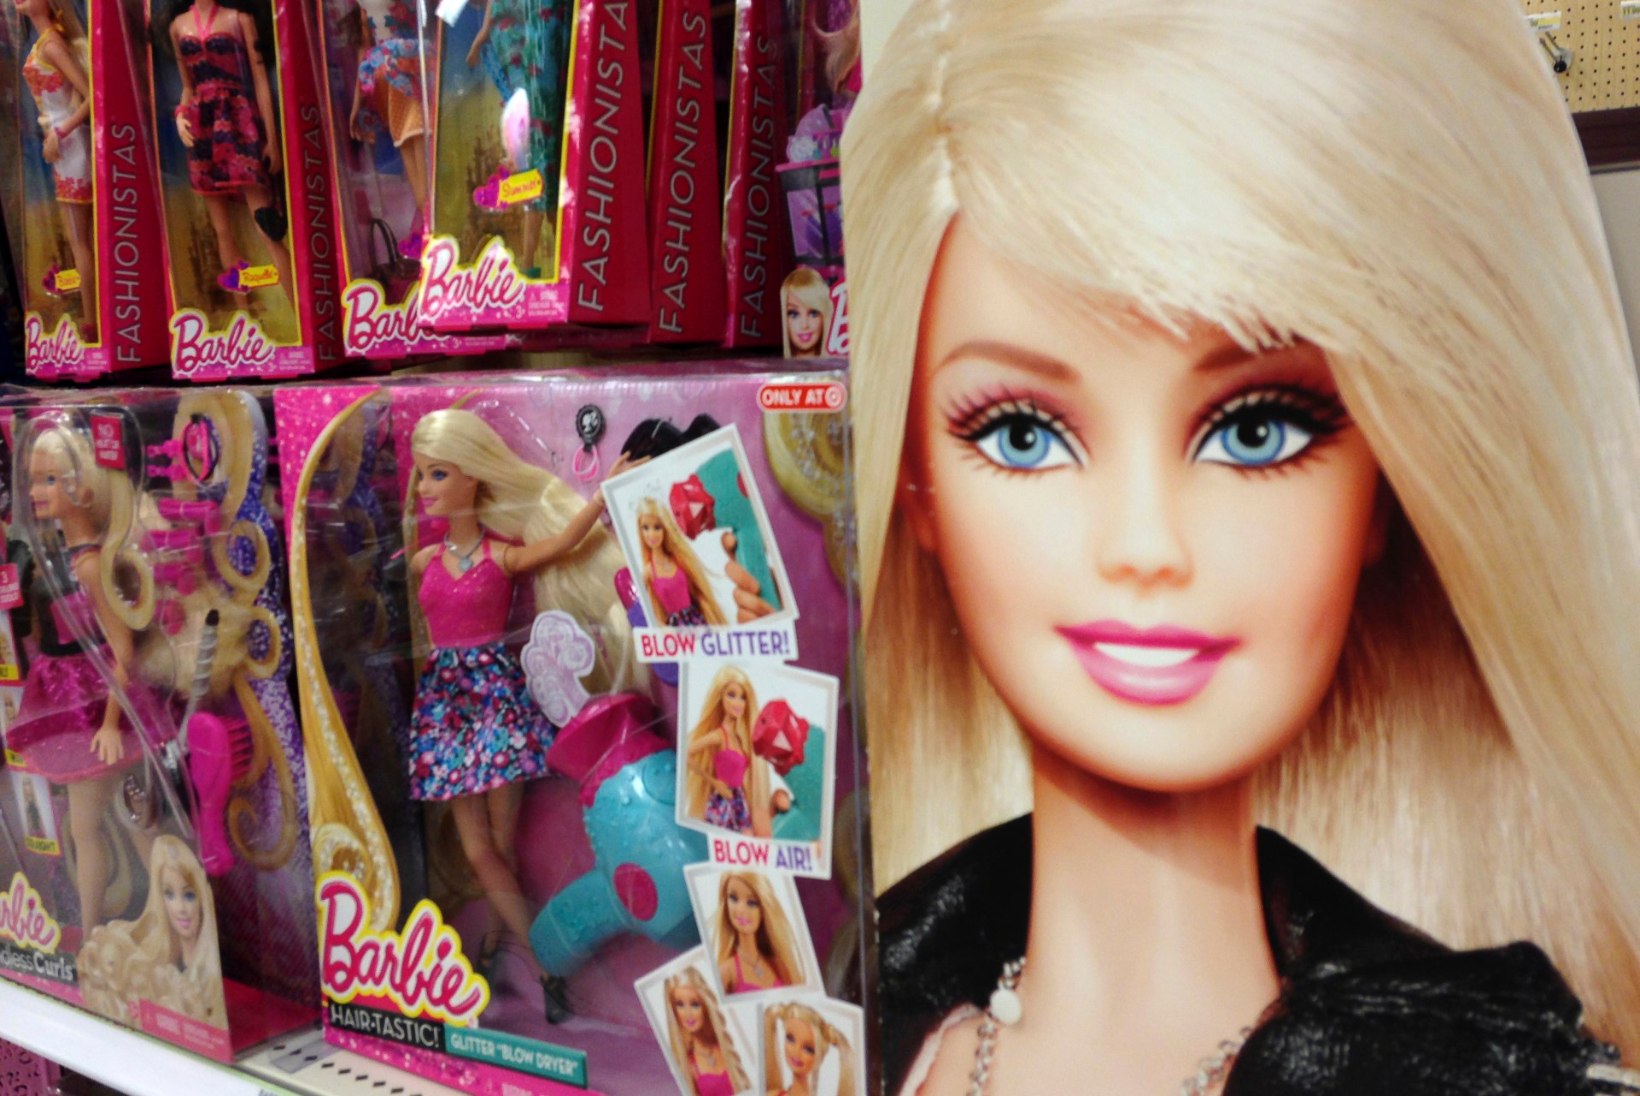 Barbie mängufilm lükkub 2020. aastasse